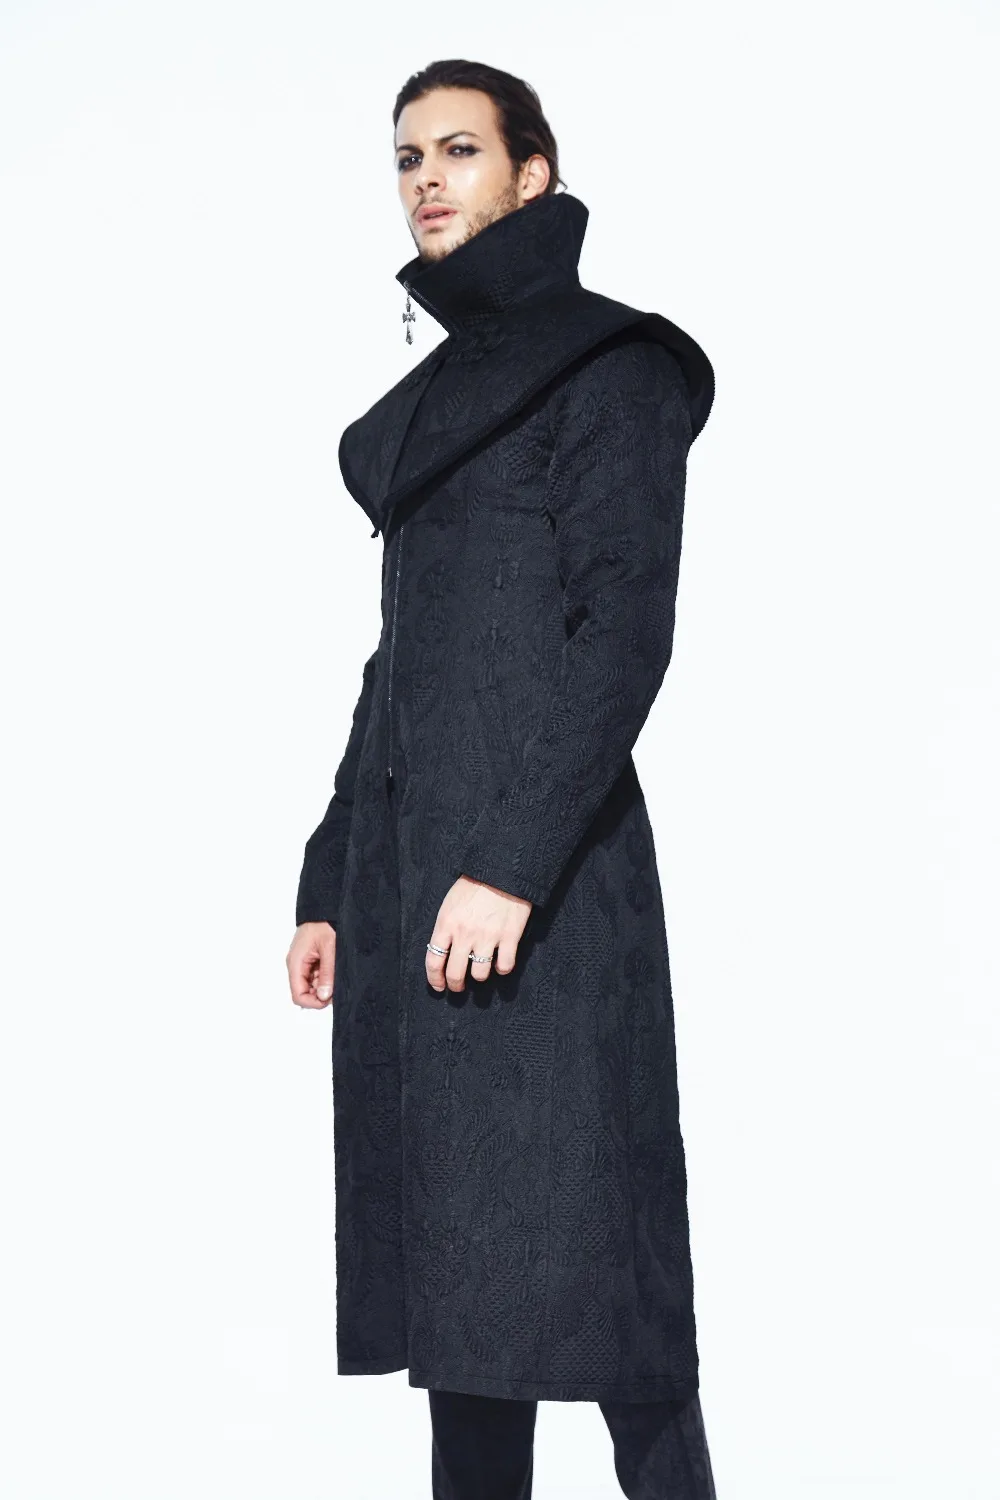 Стимпанк для мужчин пальто черный Винтаж рукава Съемная длинные пальто суд дворец косплэй